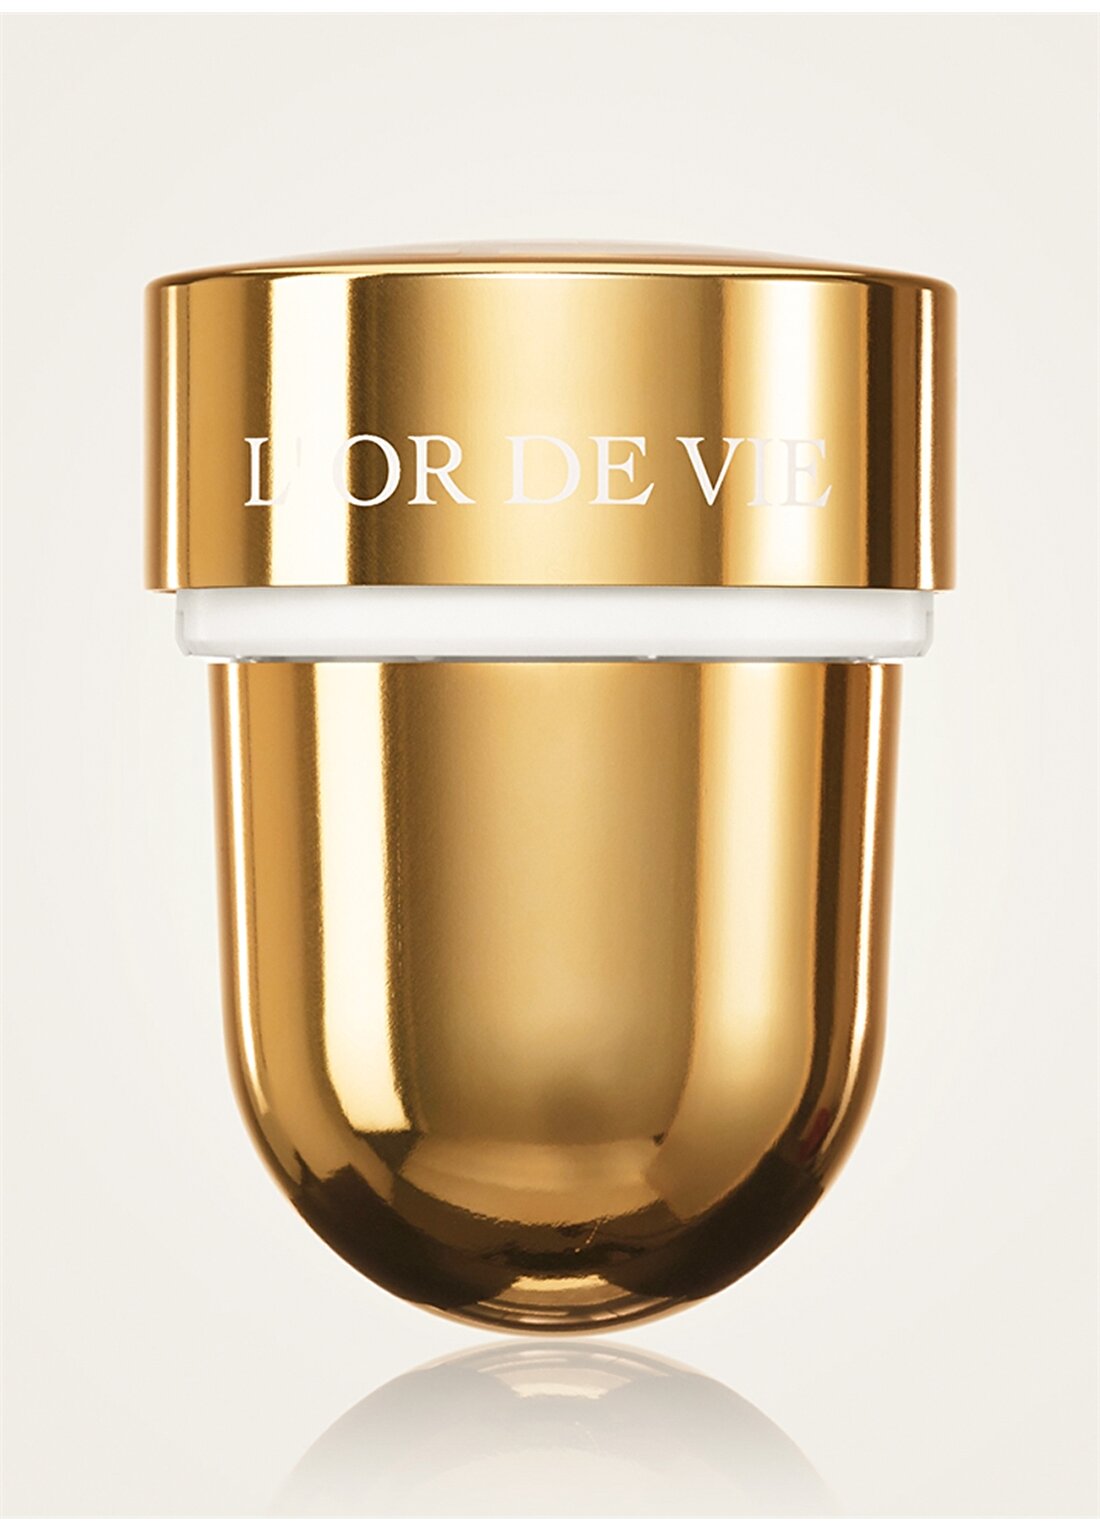 Dior L'or De Vie La Creme Refill 50 Ml